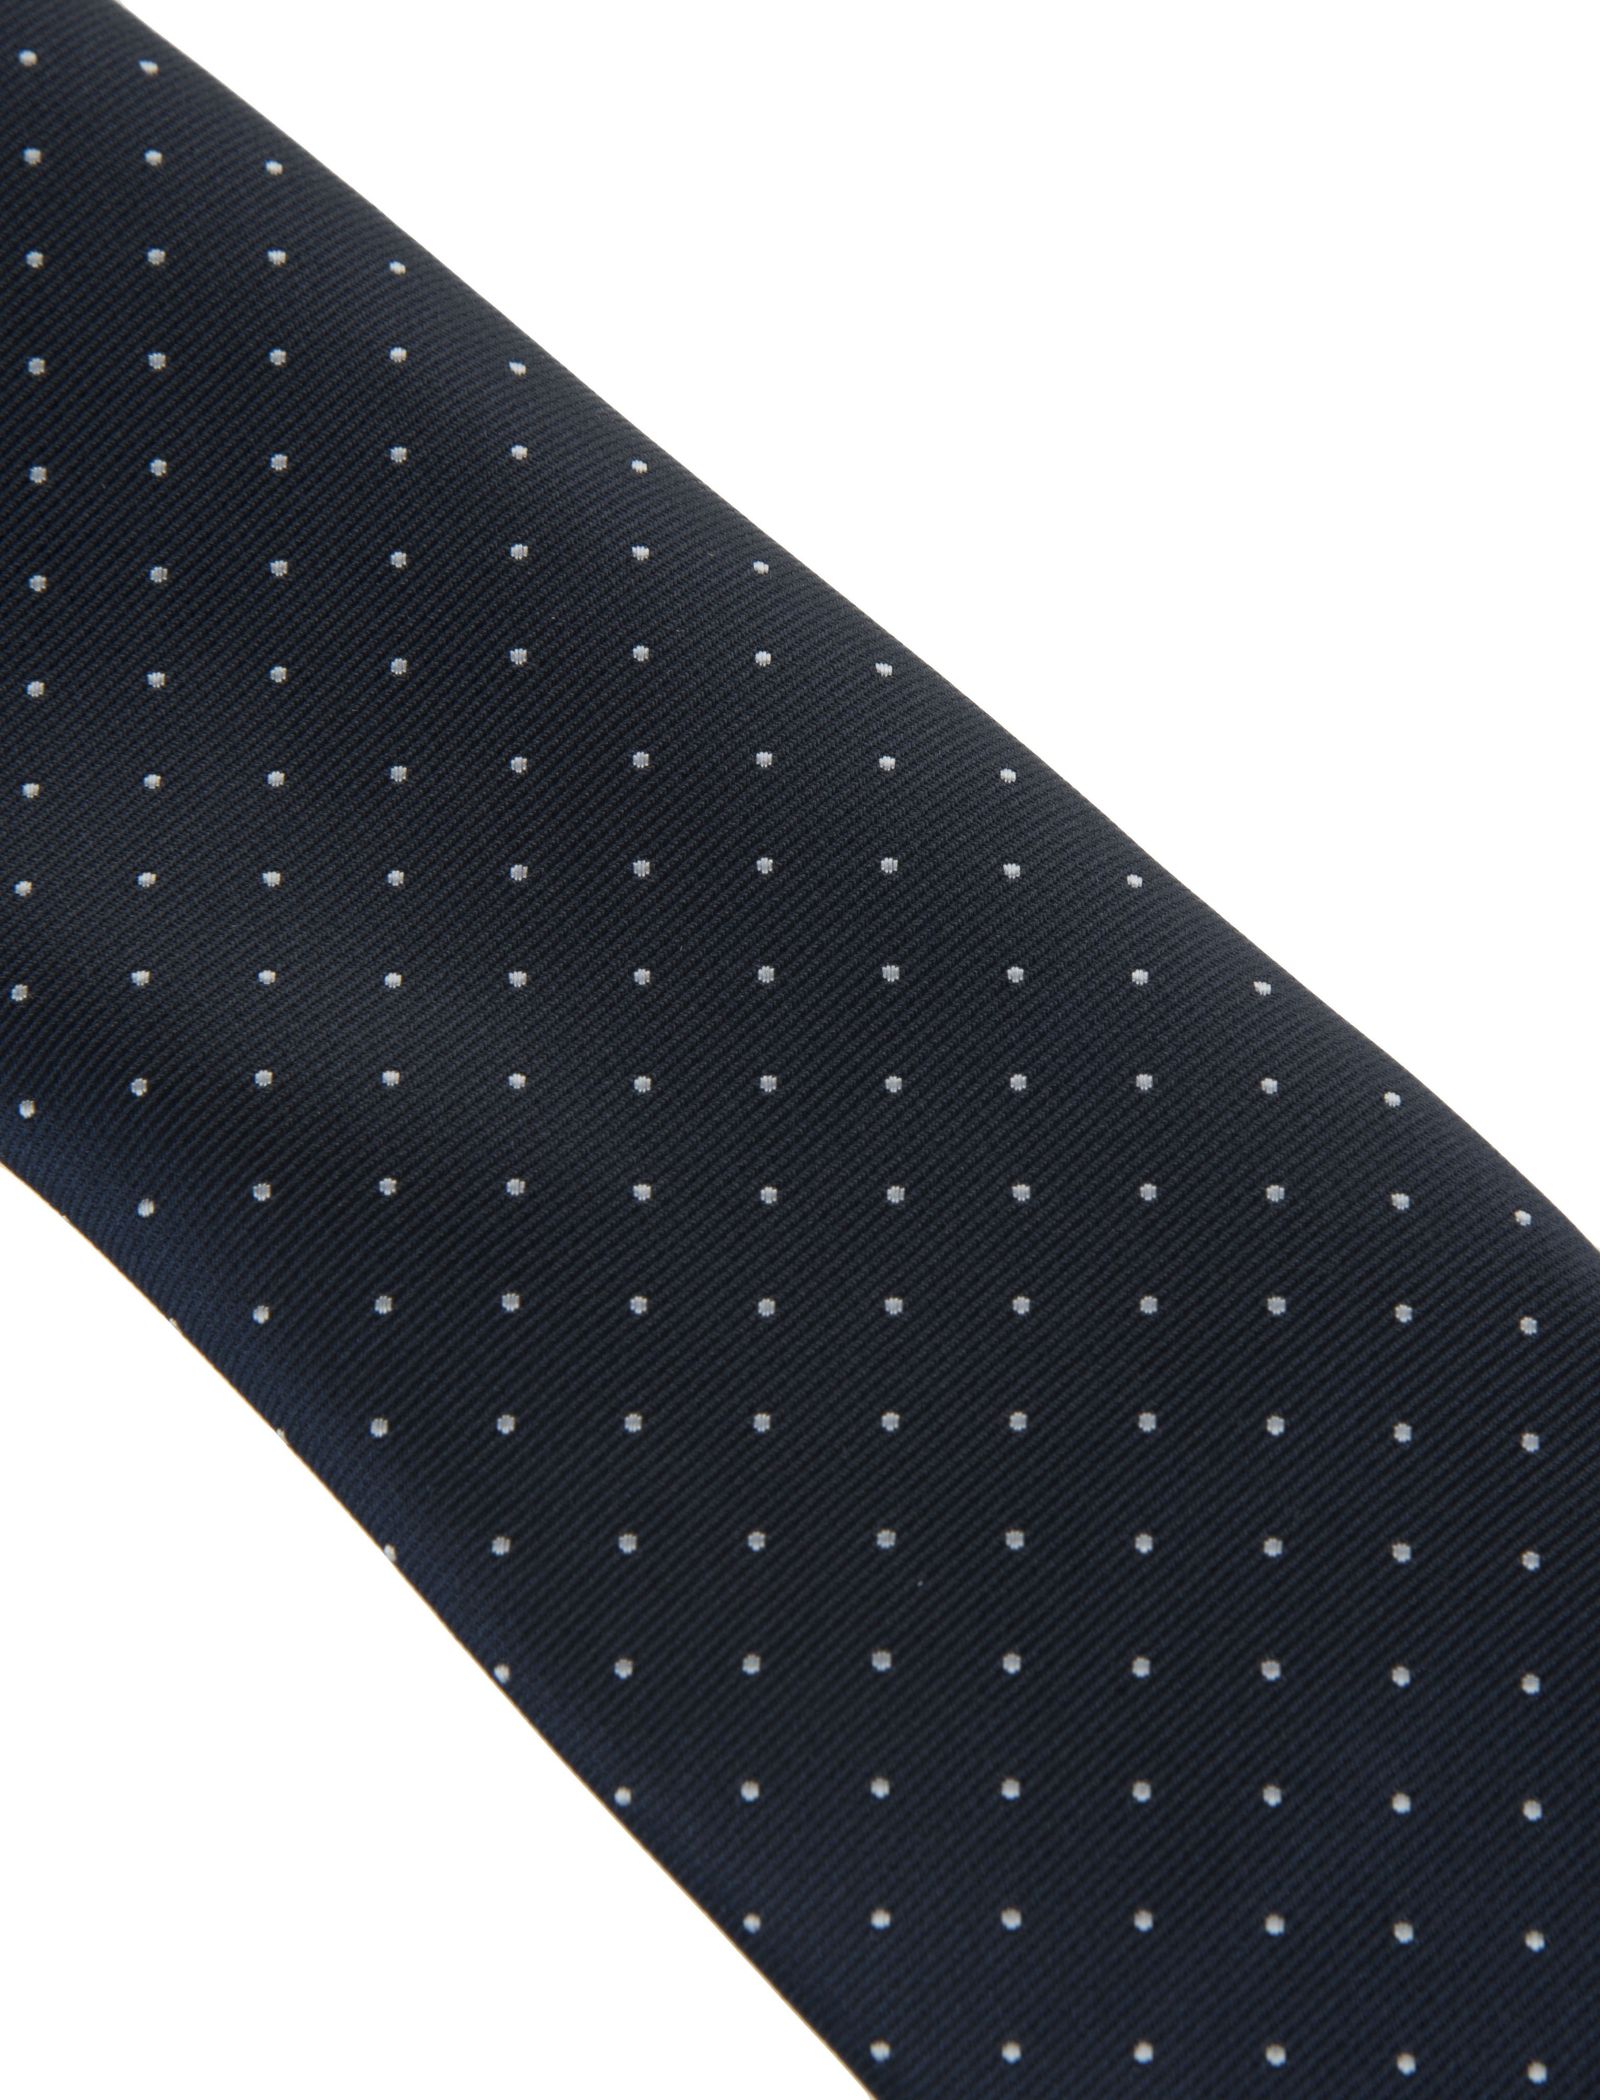 کراوات طرح دار مردانه - یوپیم تک سایز - سرمه اي - 4